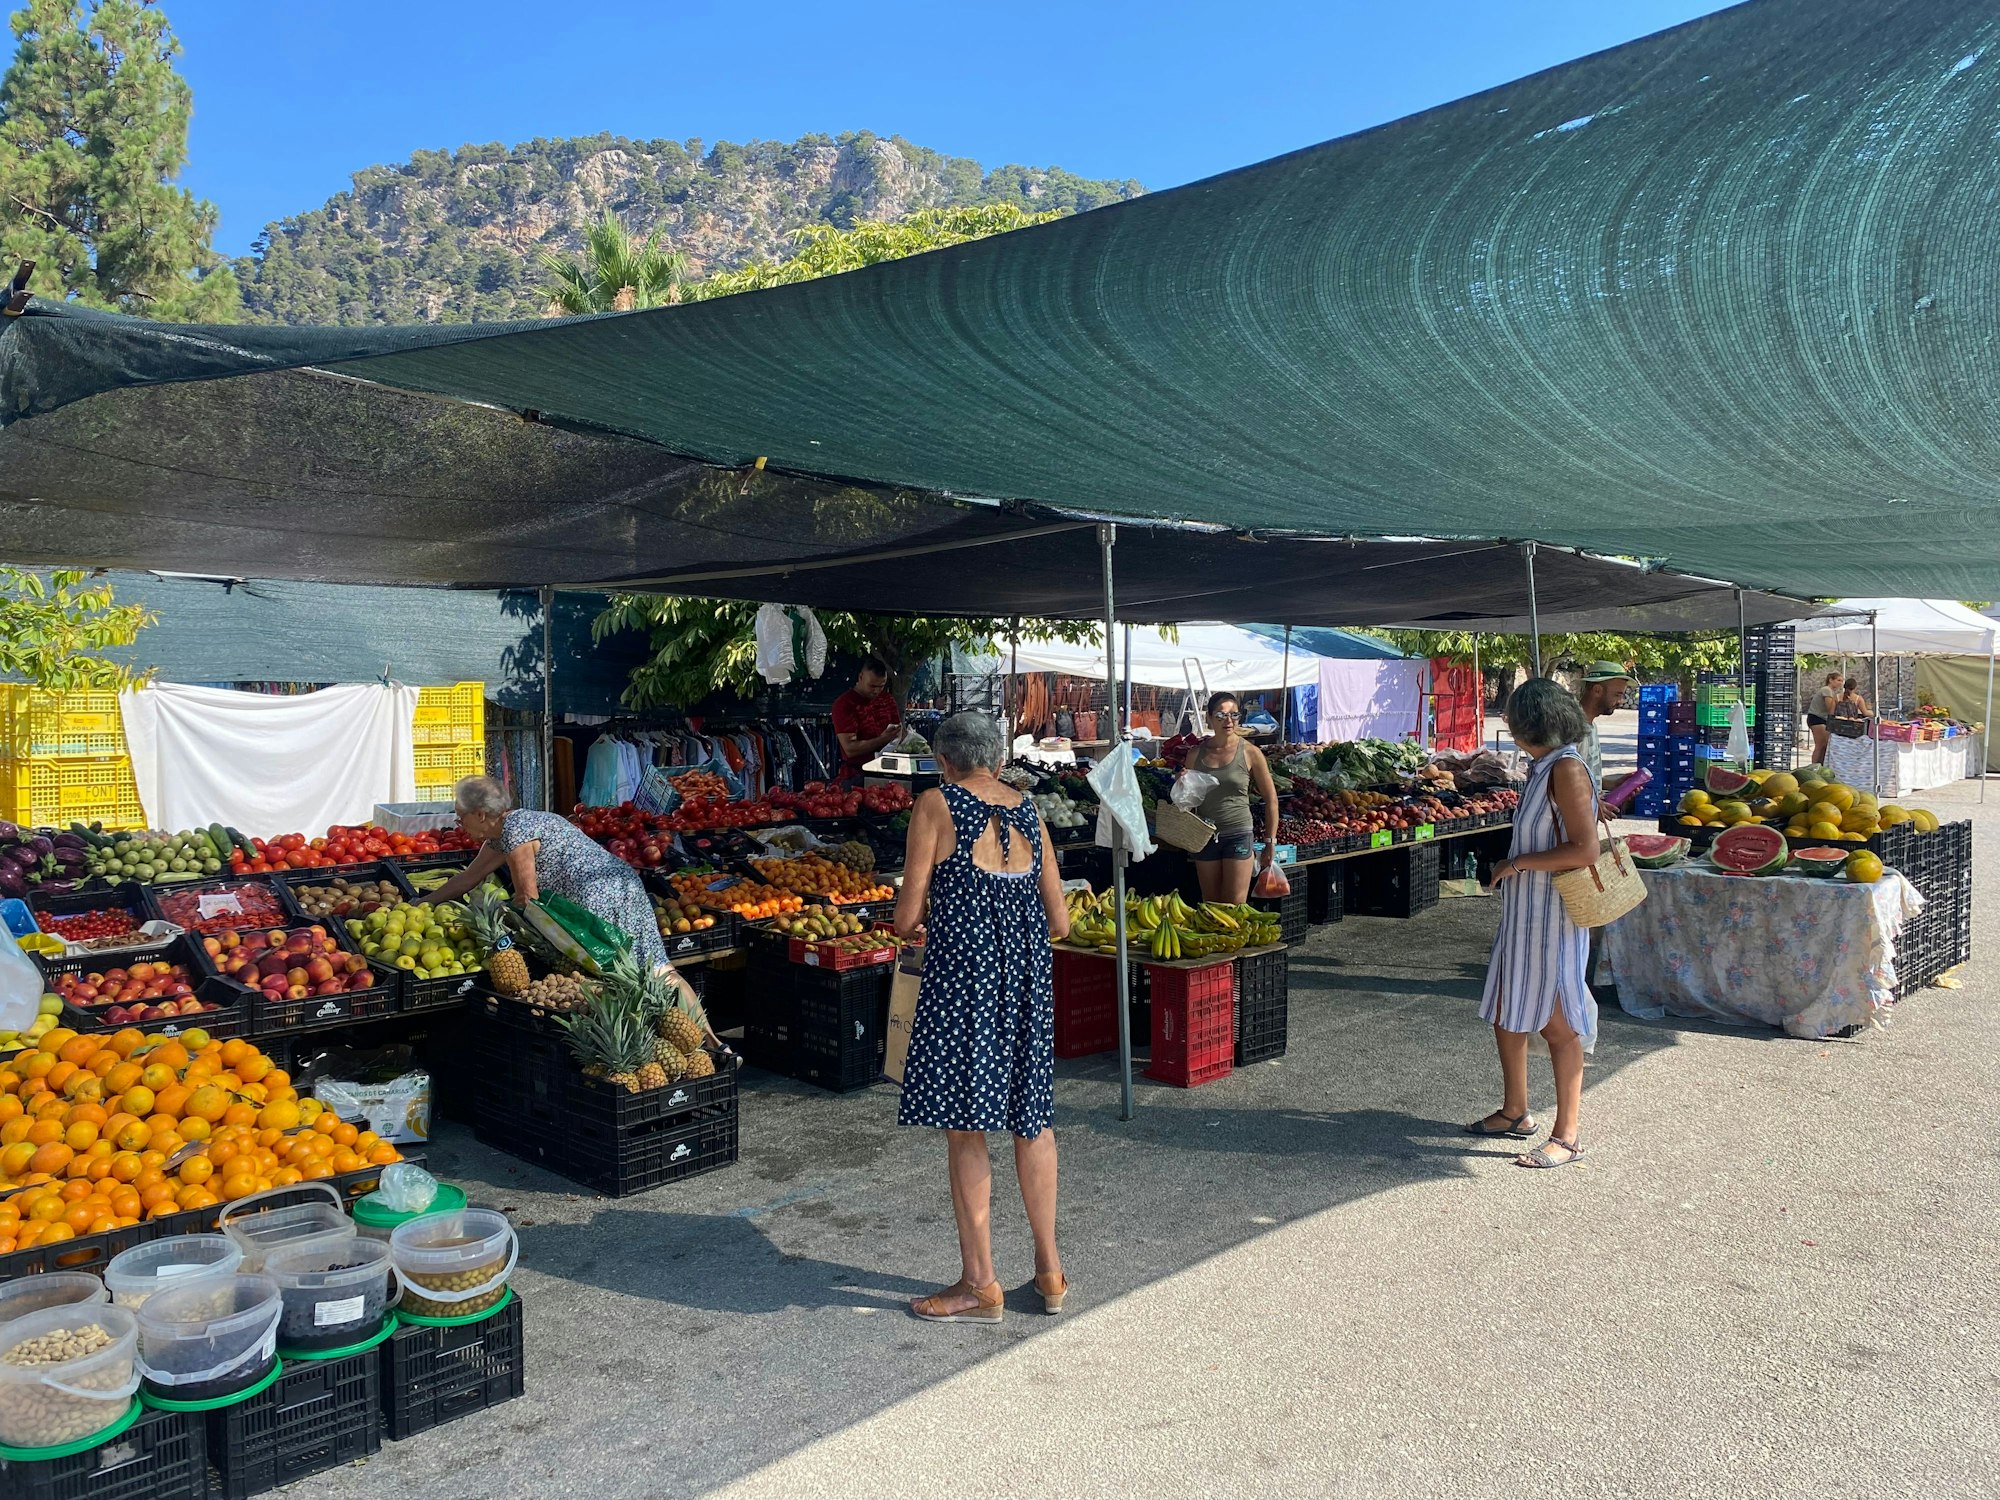 Ein Marktstand in Valldemossa, an dem es Obst und Gemüse zu kaufen gibt. Aufgenommen wurde das Bild am 17. Juli 2022.